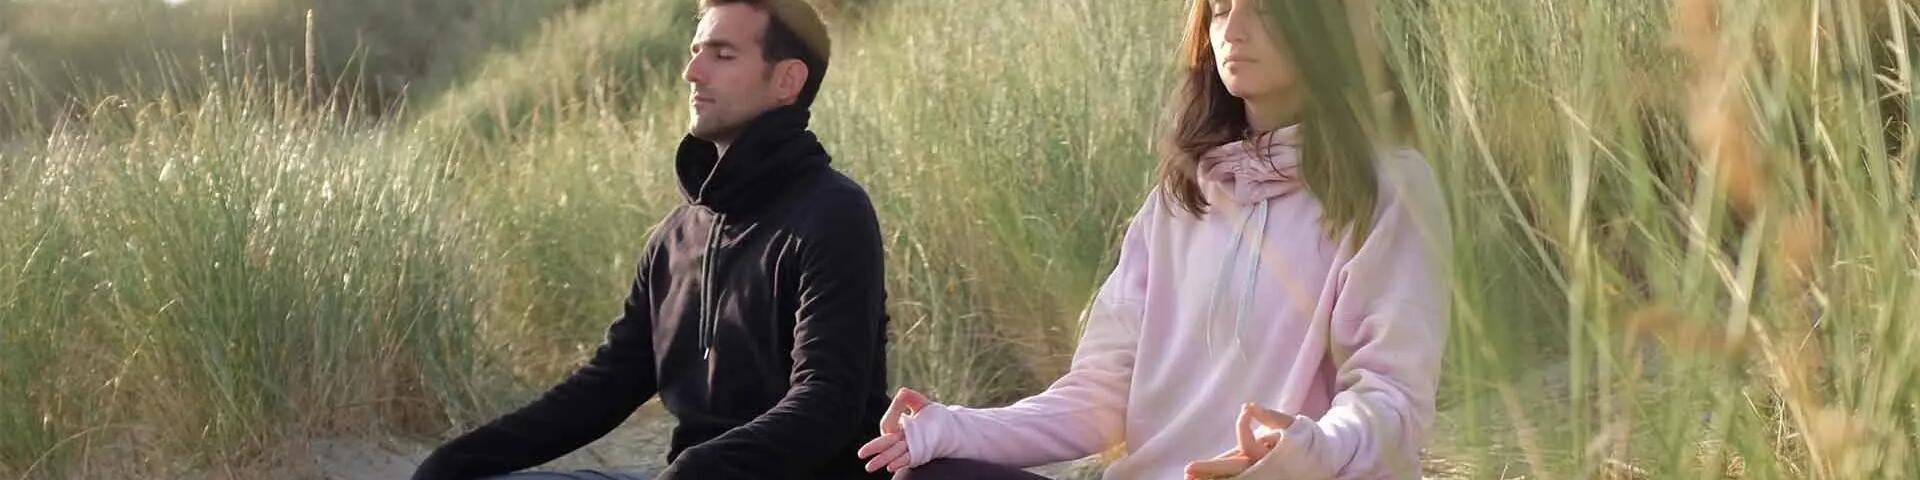 kobieta i mężczyzna podczas medytacji